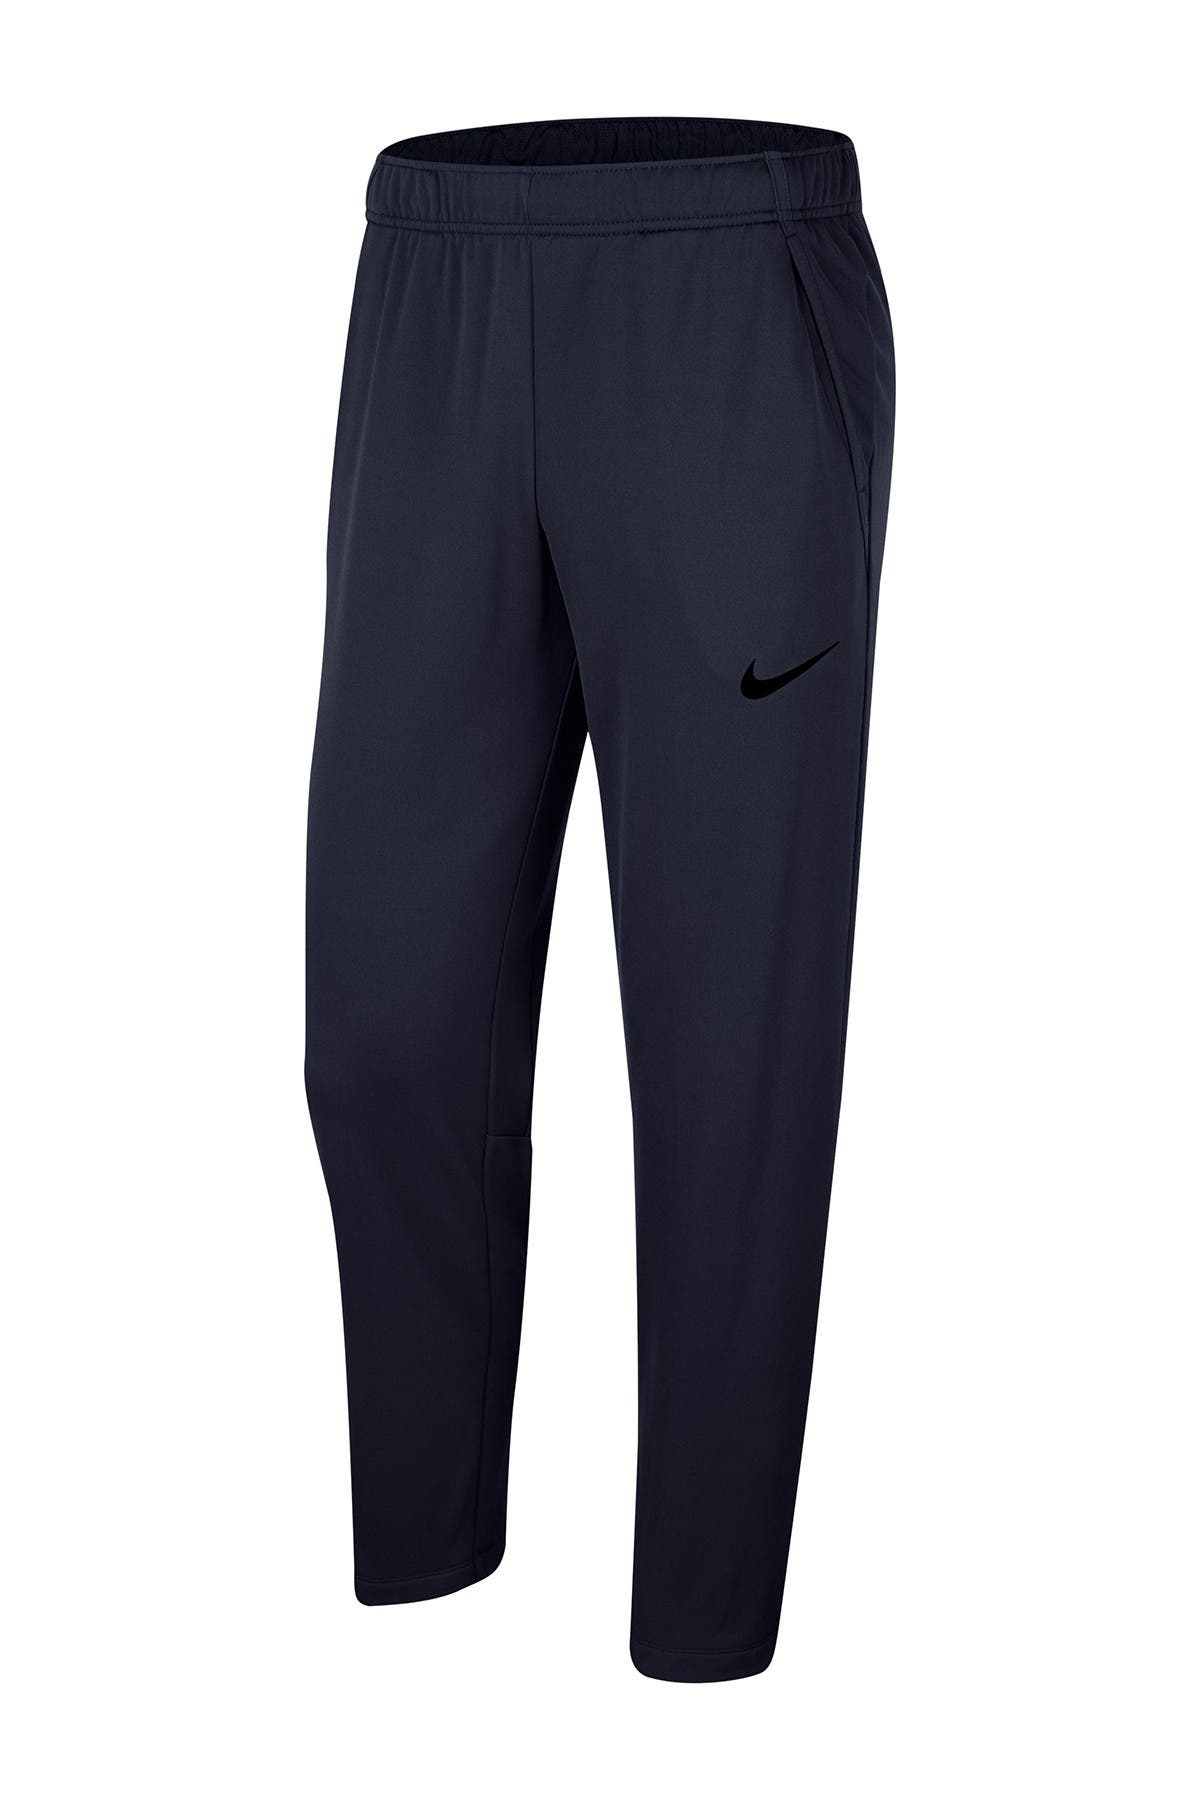 Nike Pants for Men | Nordstrom Rack